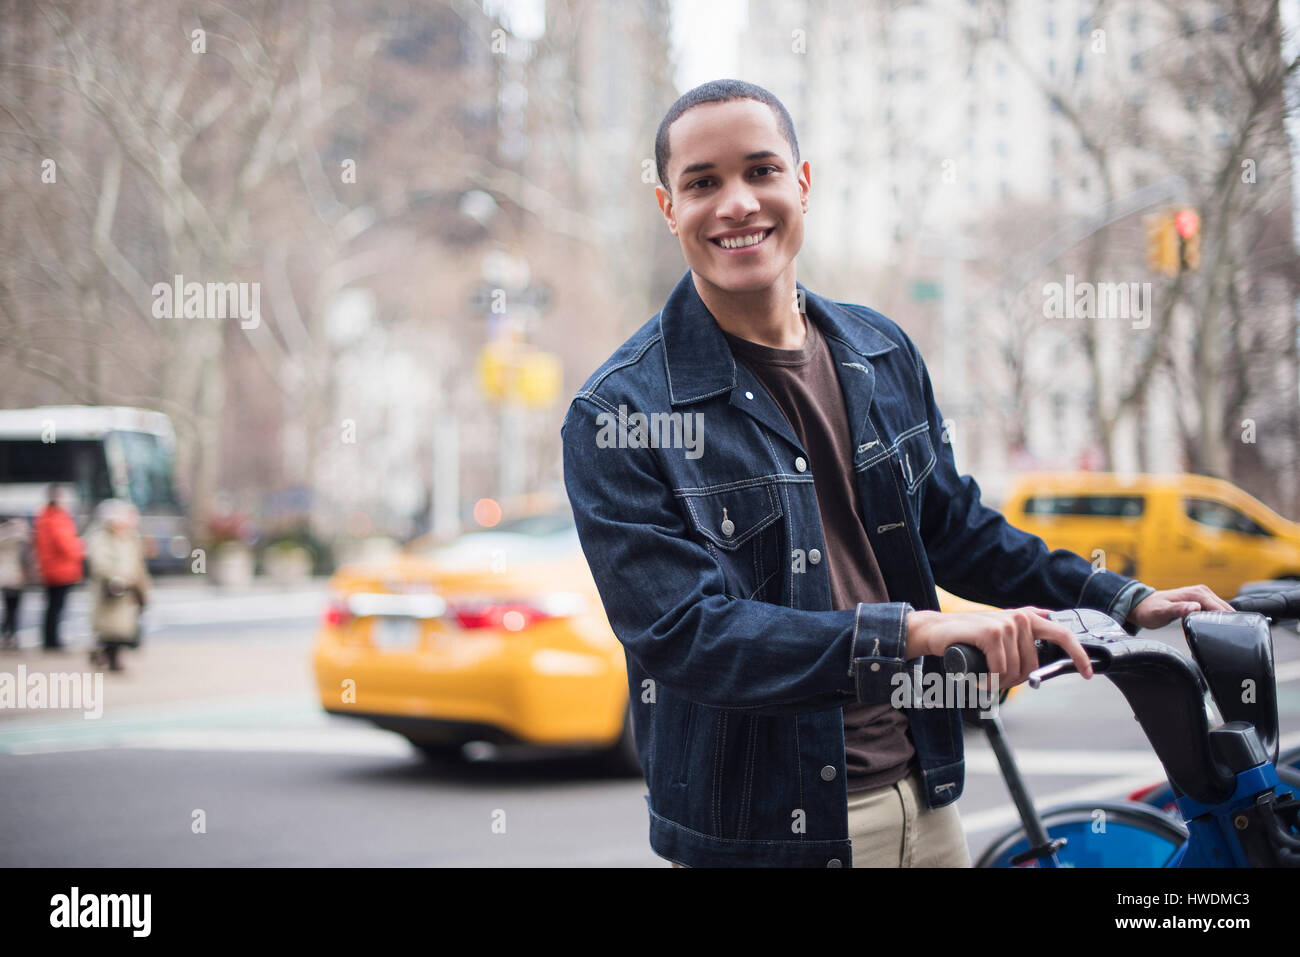 Jeune homme à l'aide de vélos de ville, Manhattan, New York, USA Banque D'Images